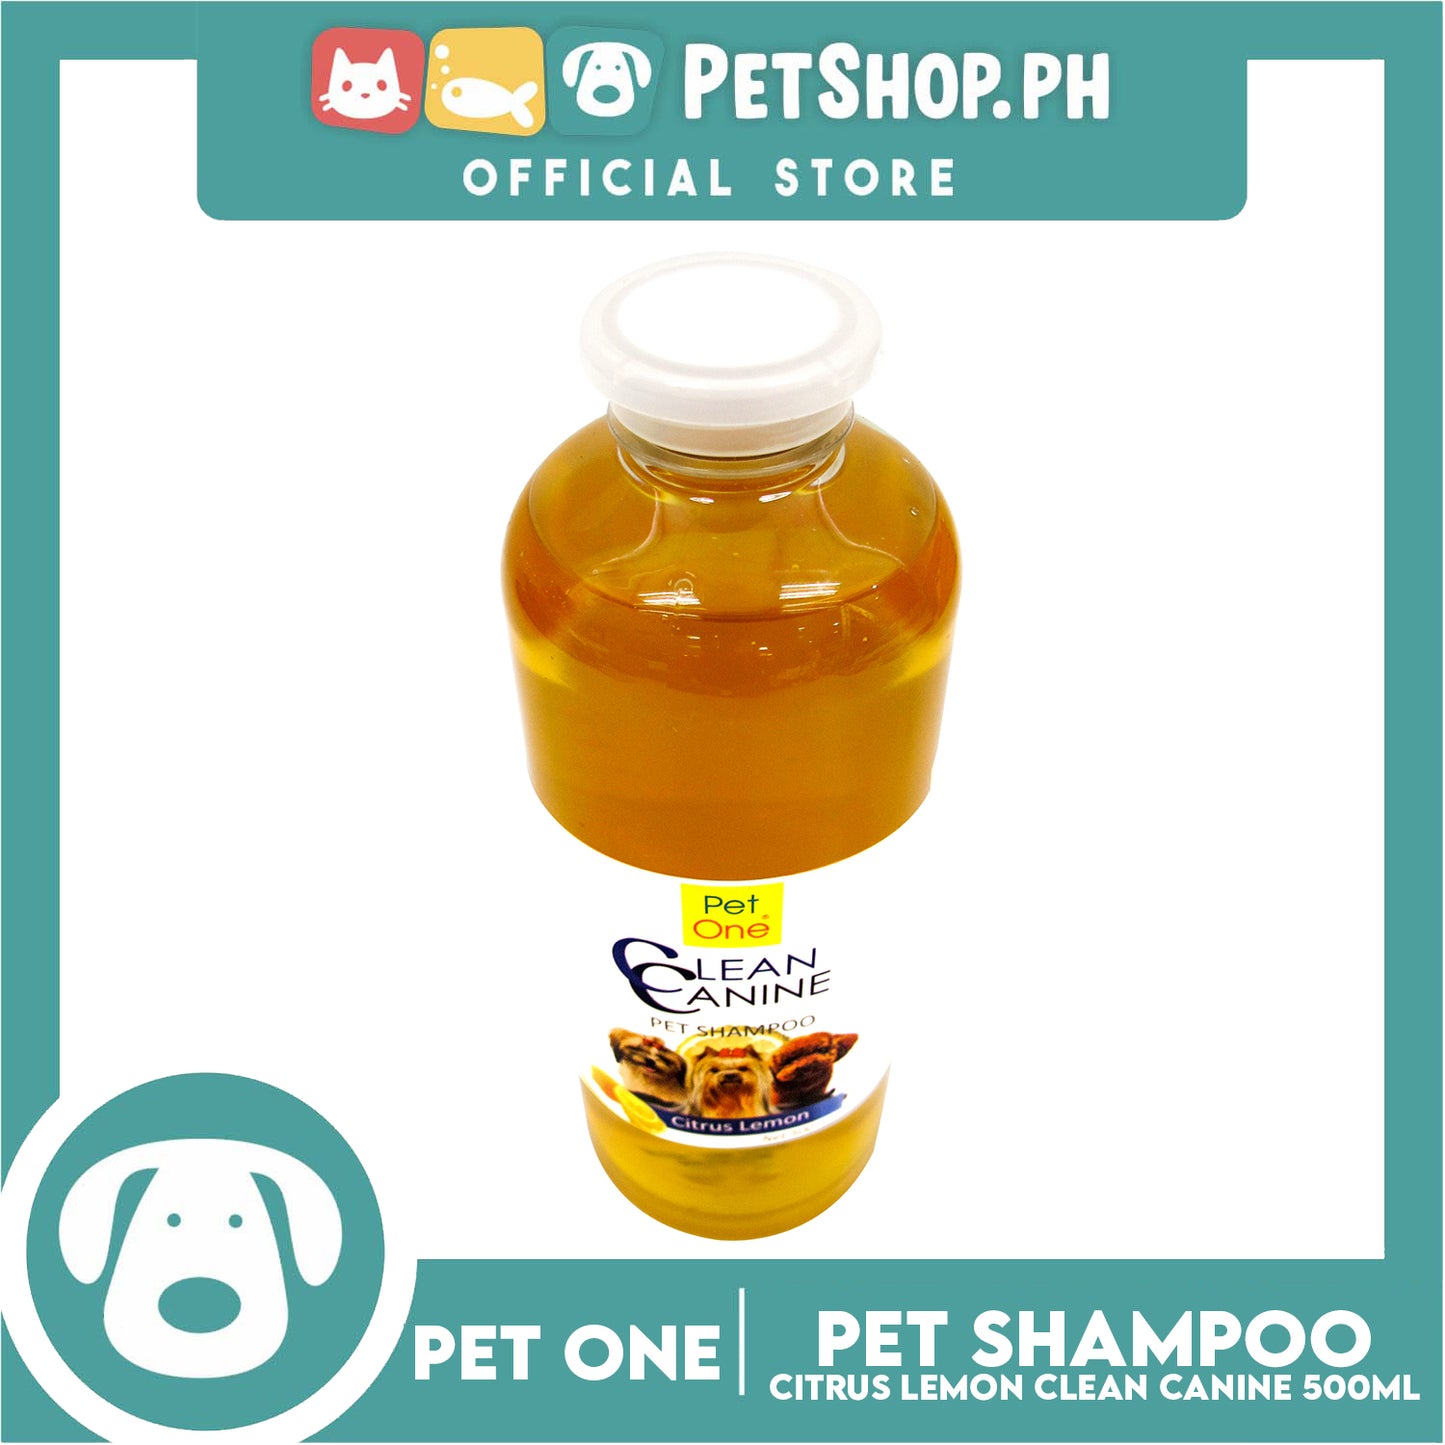 Pet One Clean Canine Pet Shampoo 500ml (Citrus Lemon Scent)